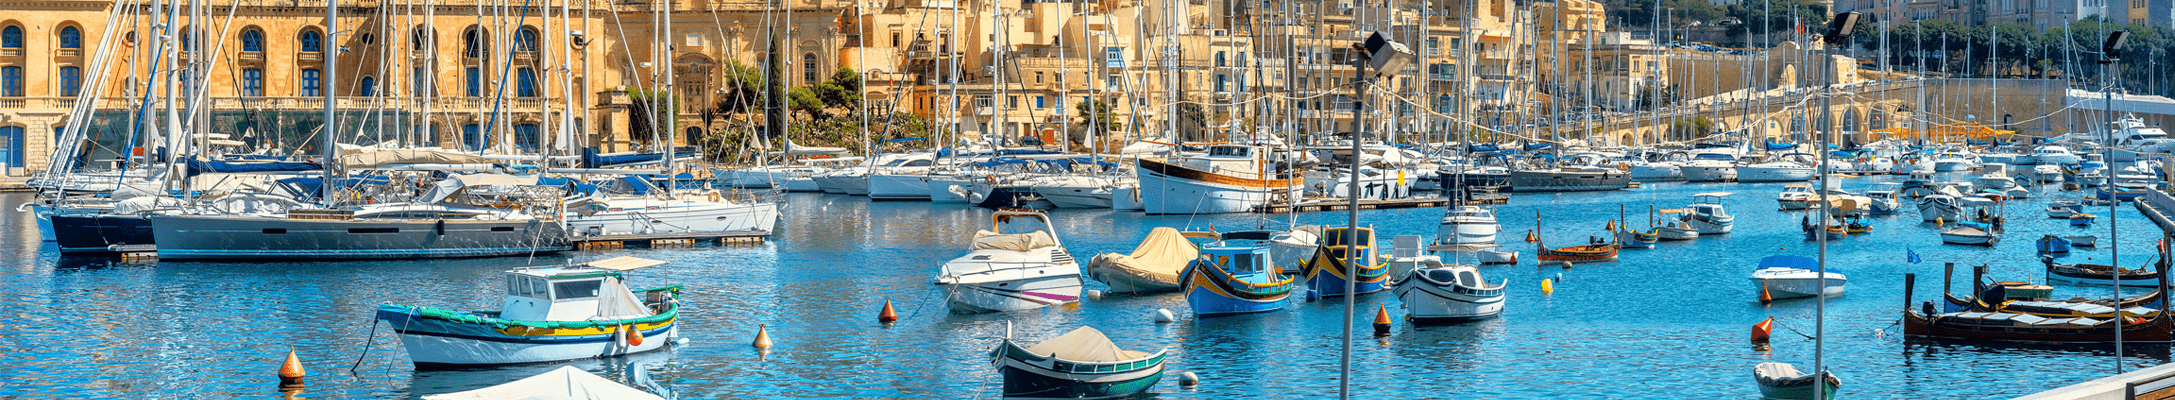 Nach Malta auswandern - Wohnsitz in Malta